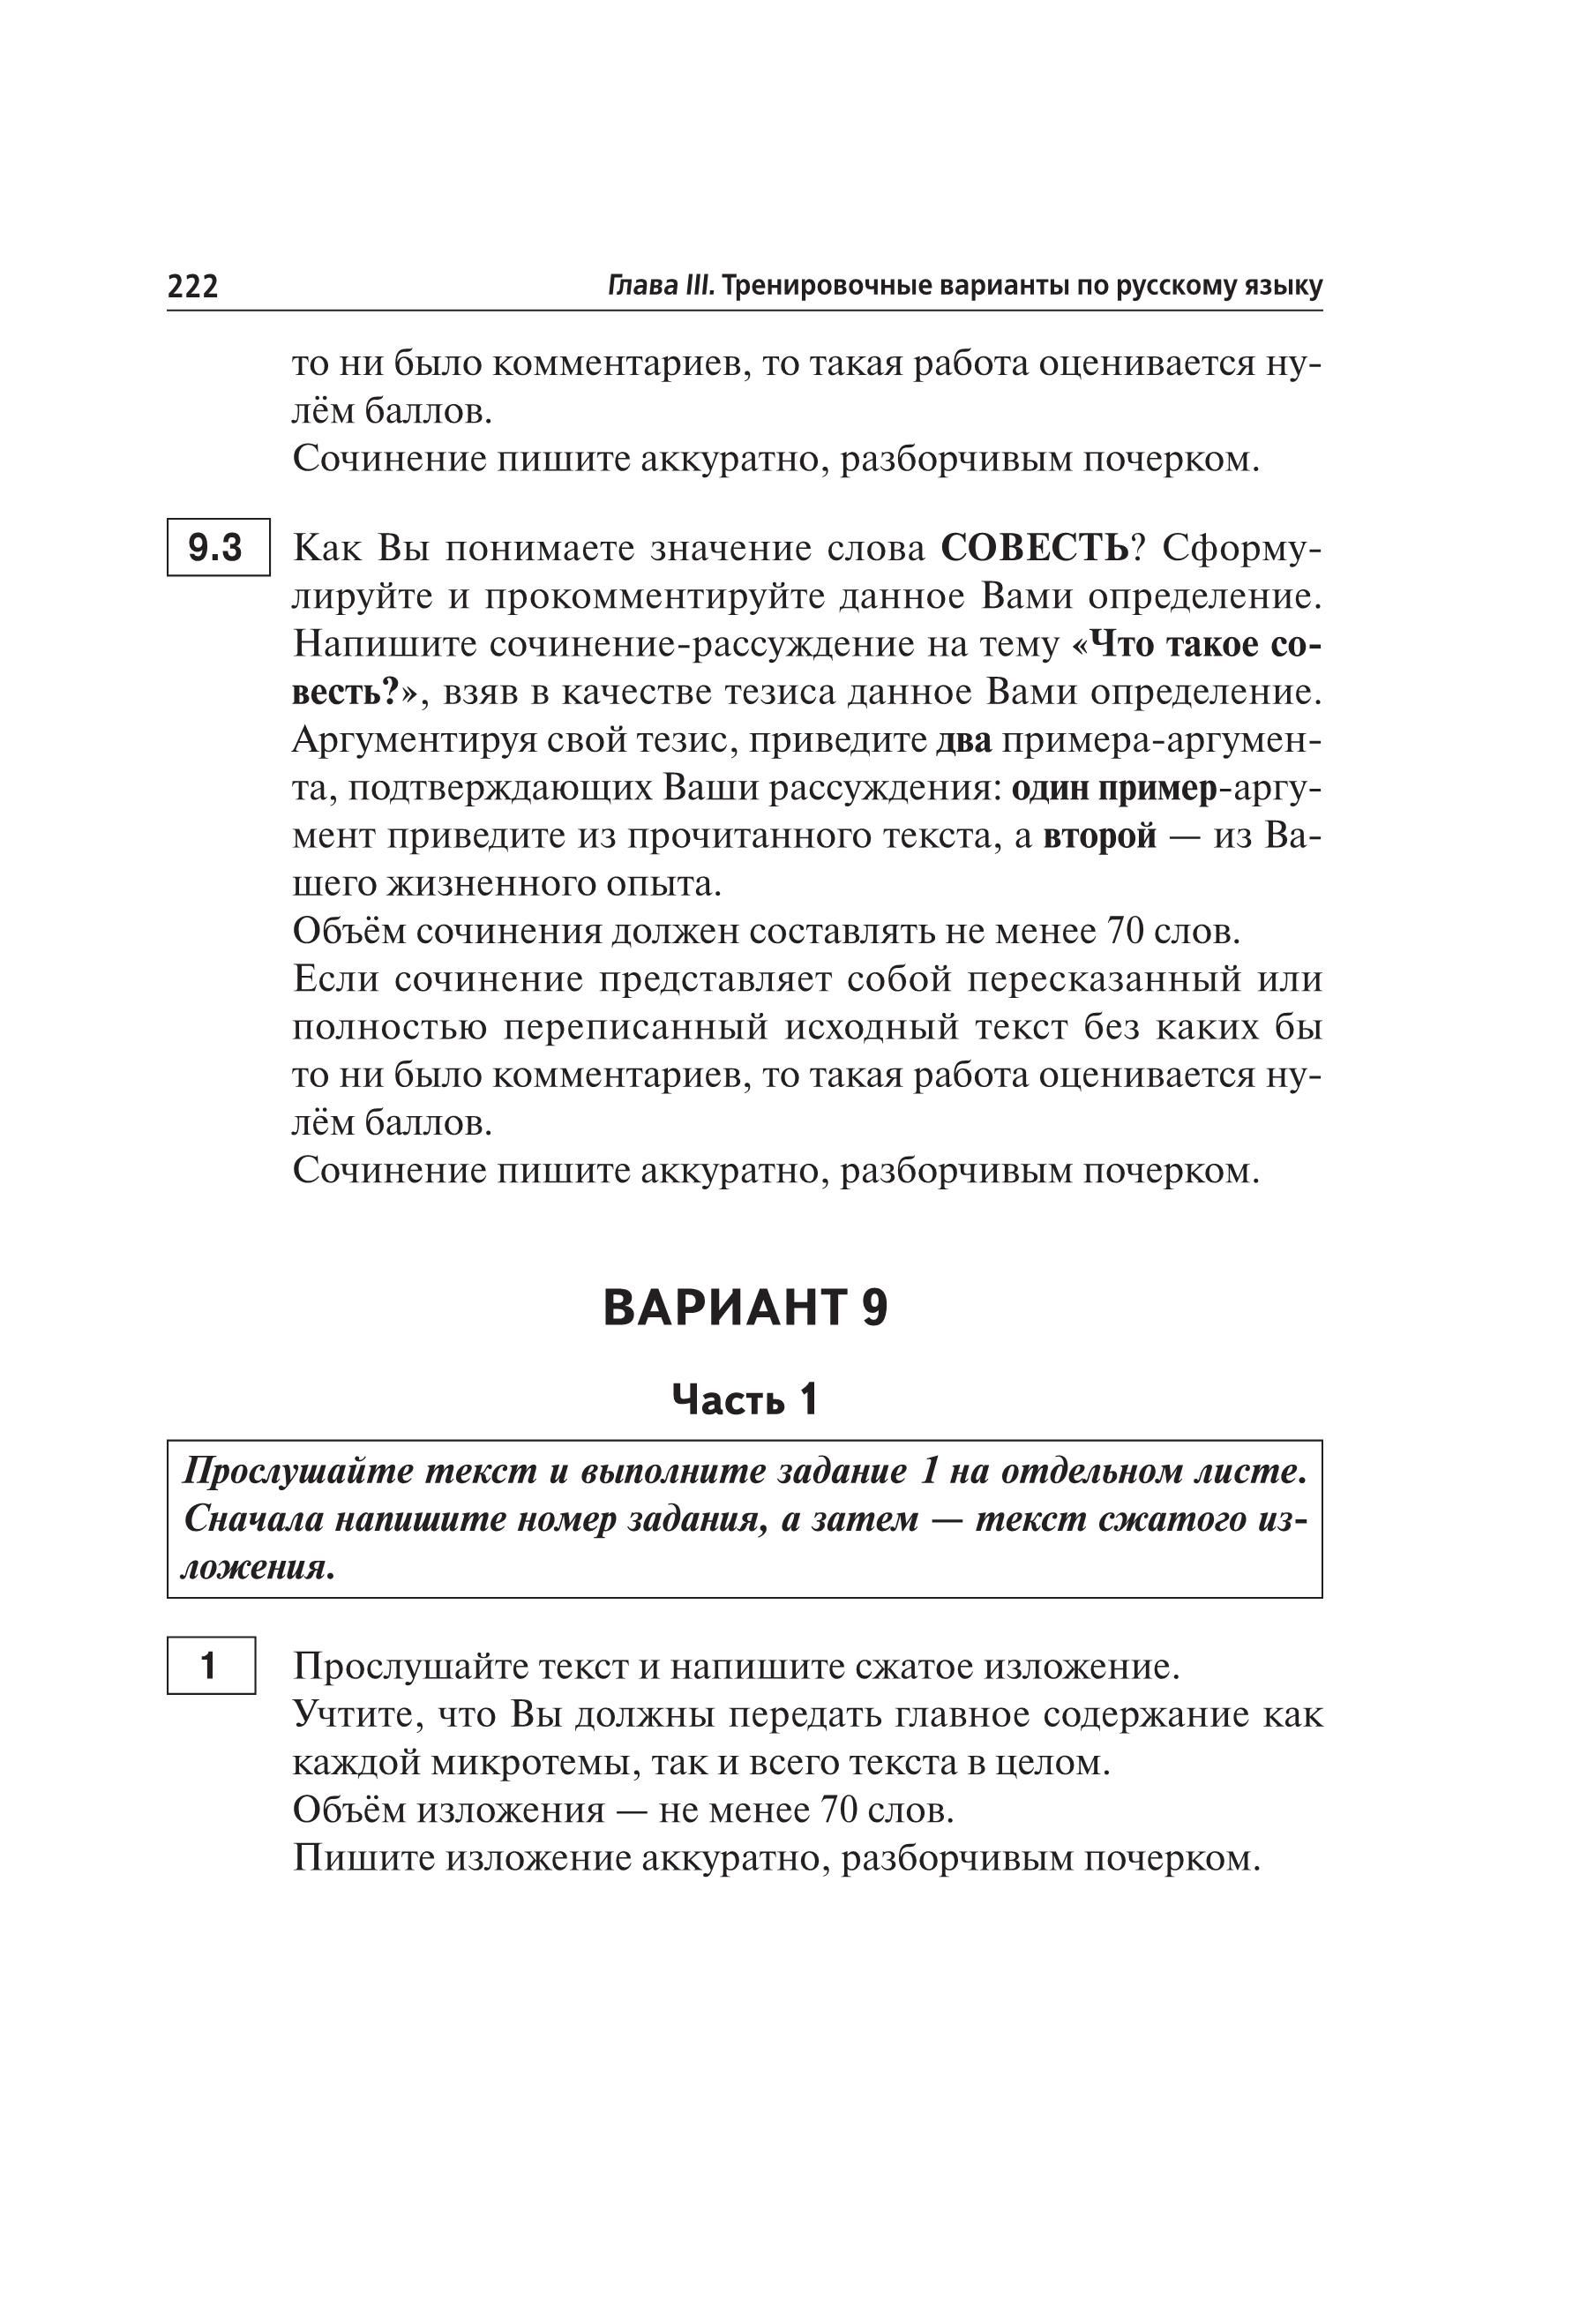 Русский язык. Подготовка к ОГЭ-2020. 9 класс. 30 тренировочных вариантов по демоверсии 2020 года